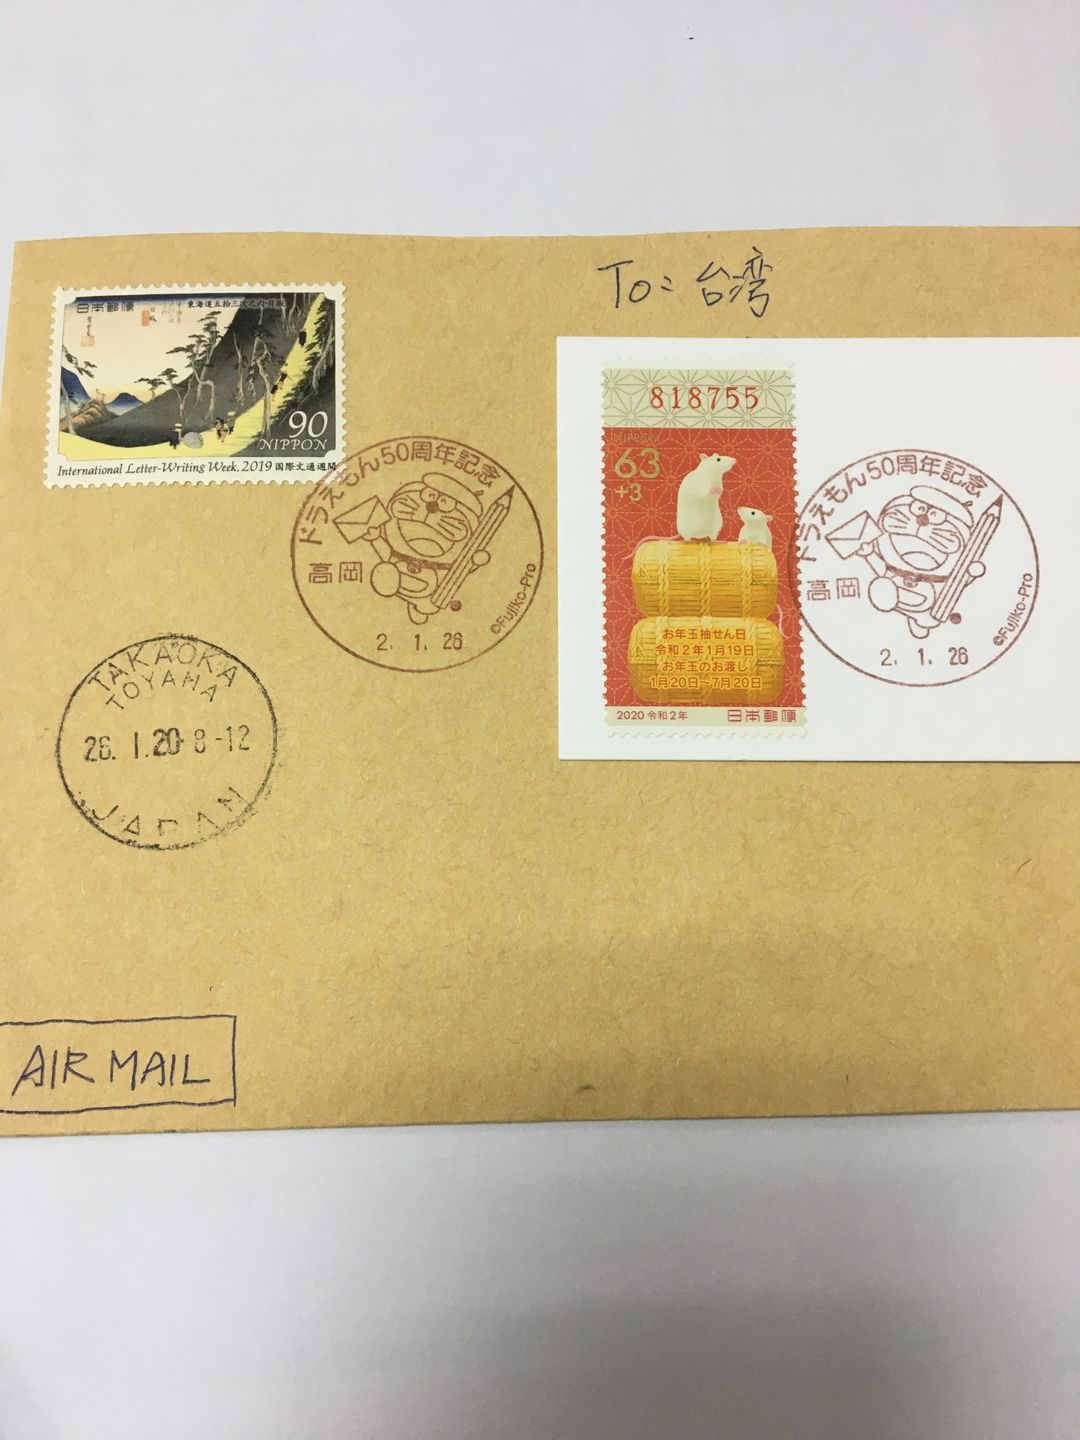 日本郵便局風景印、小型印| 日本| 東京・關東| 旅行酒吧